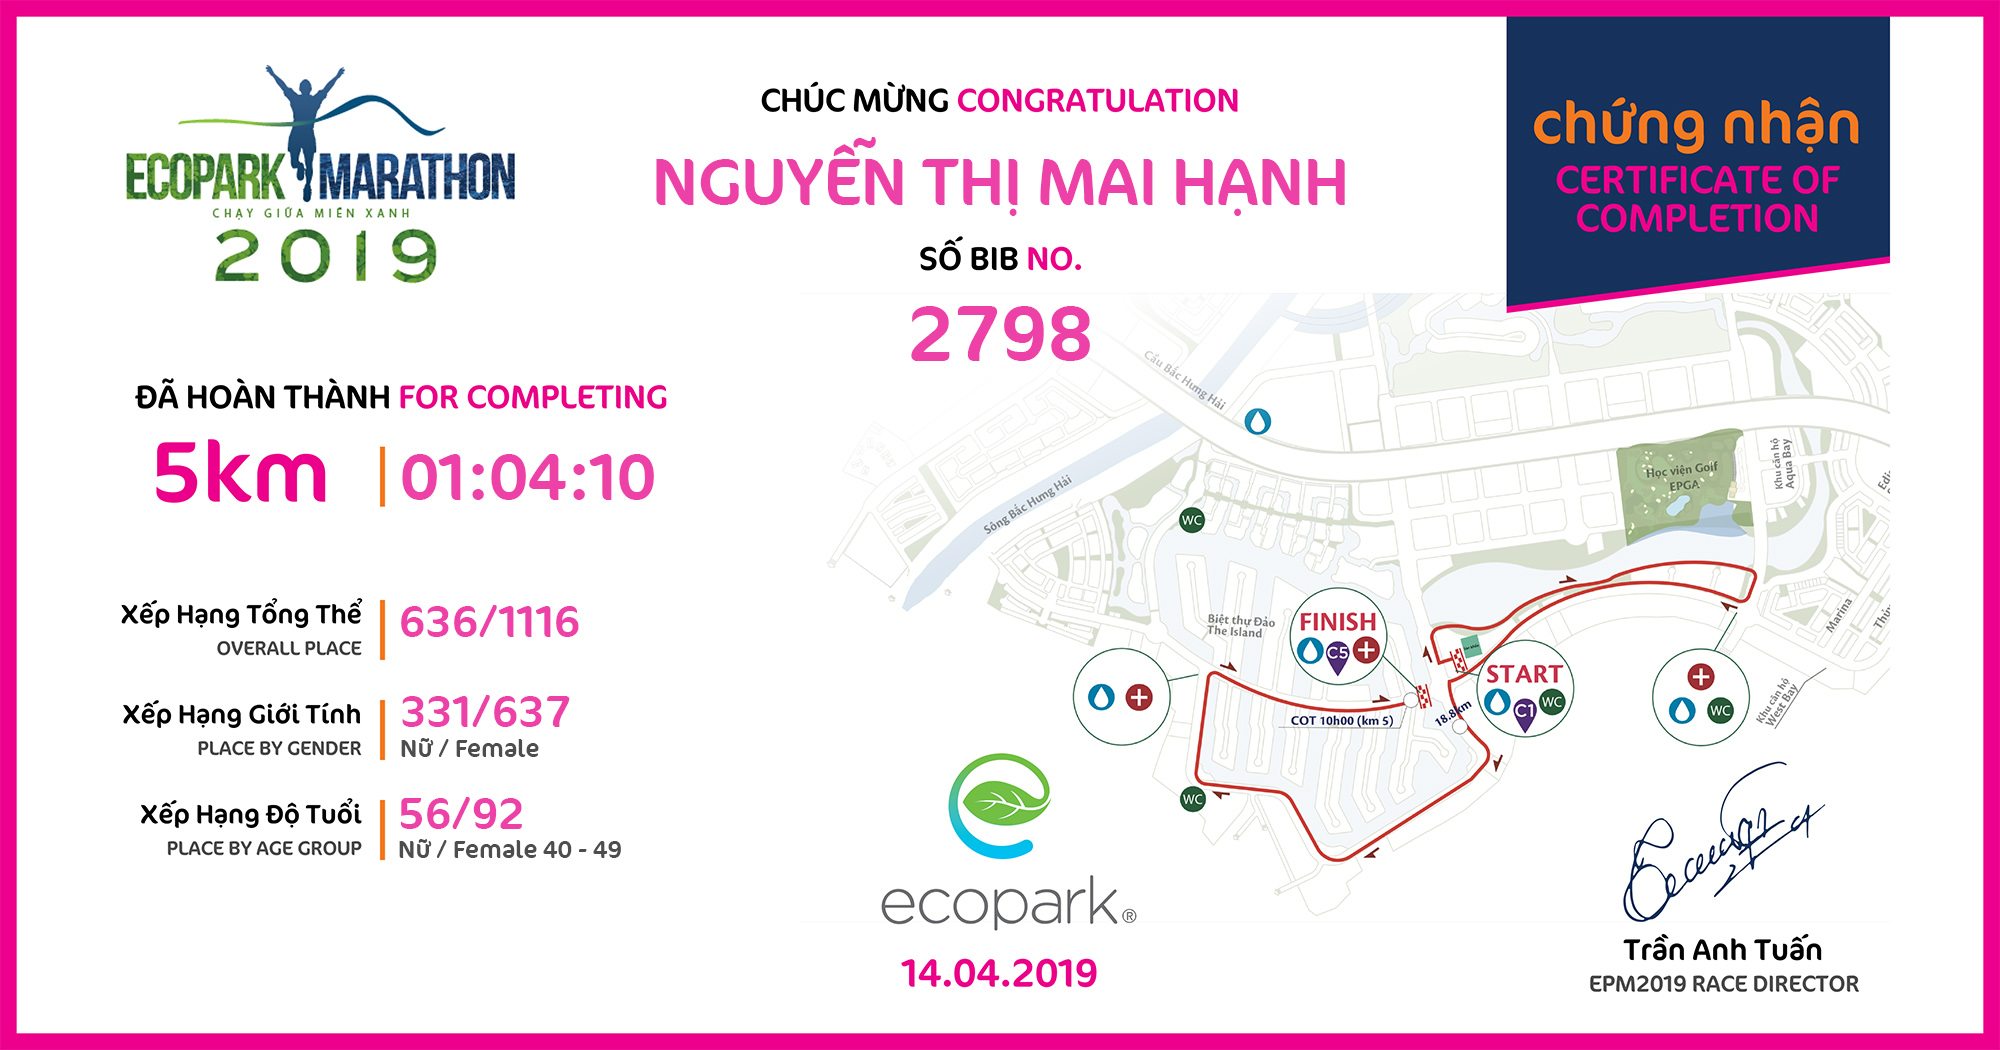 2798 - Nguyễn Thị Mai Hạnh